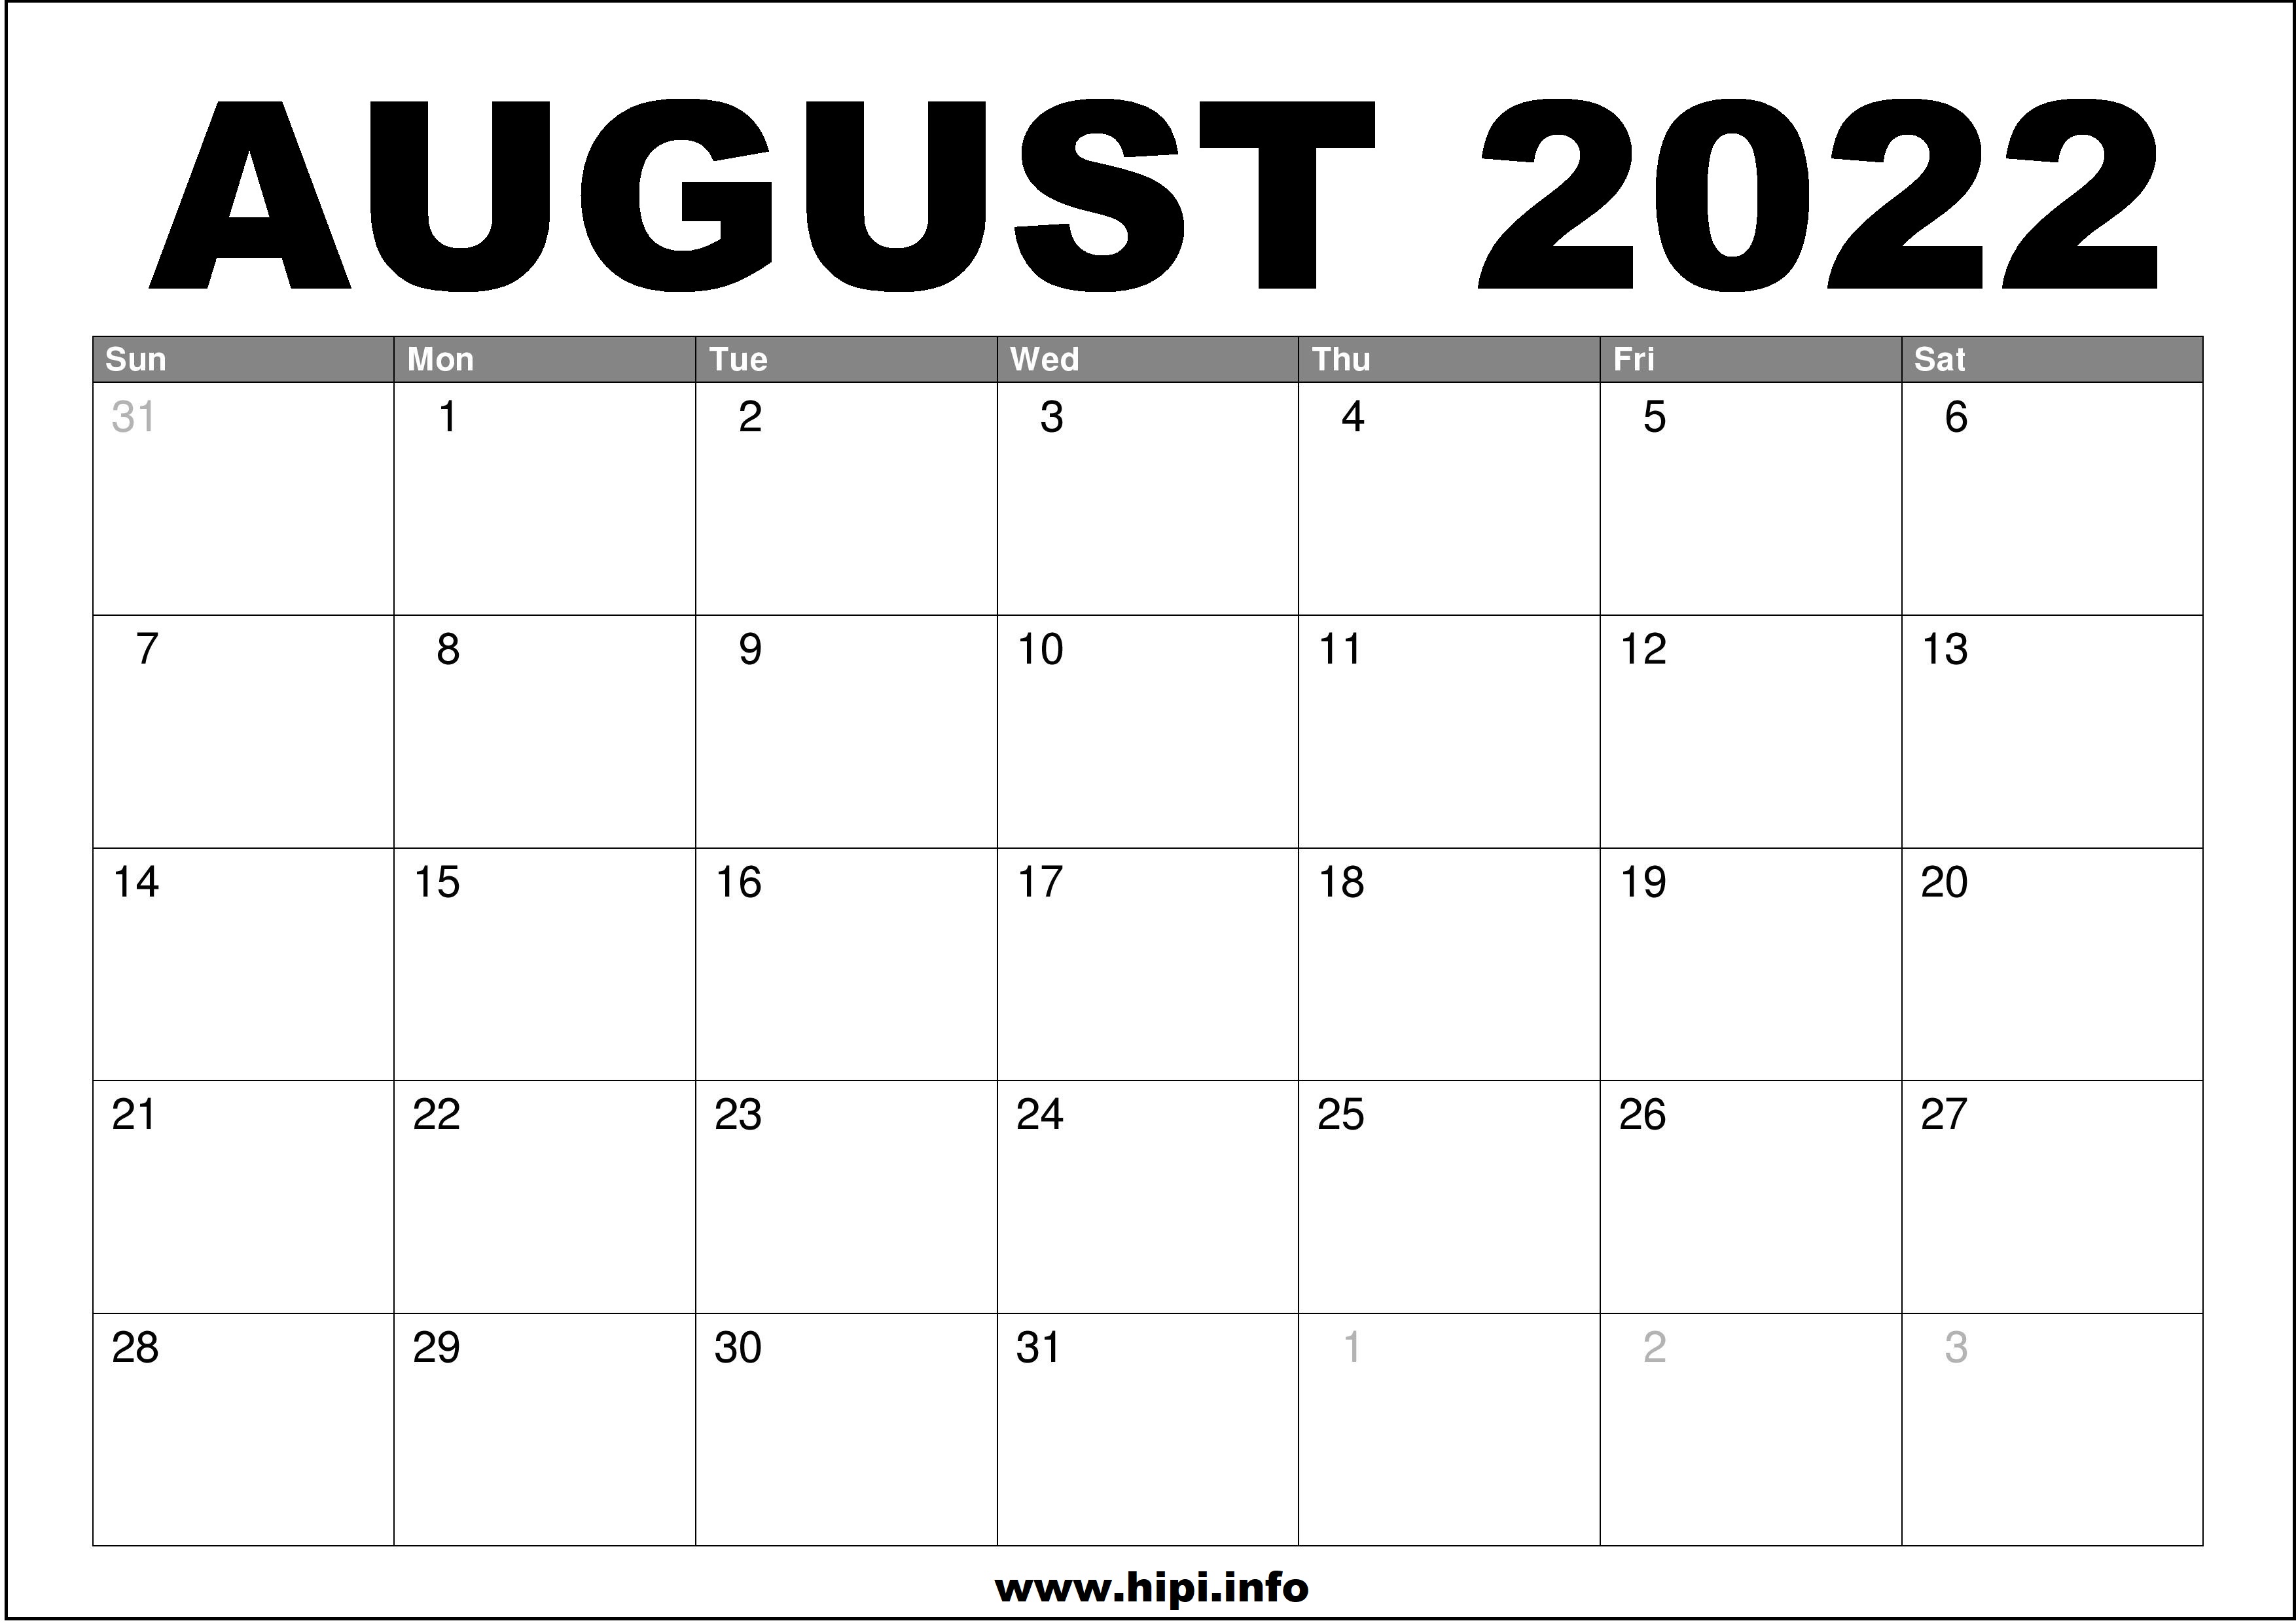 Print A Calendar August 2022 August 2022 Calendar Printable Free - Hipi.info | Calendars Printable Free